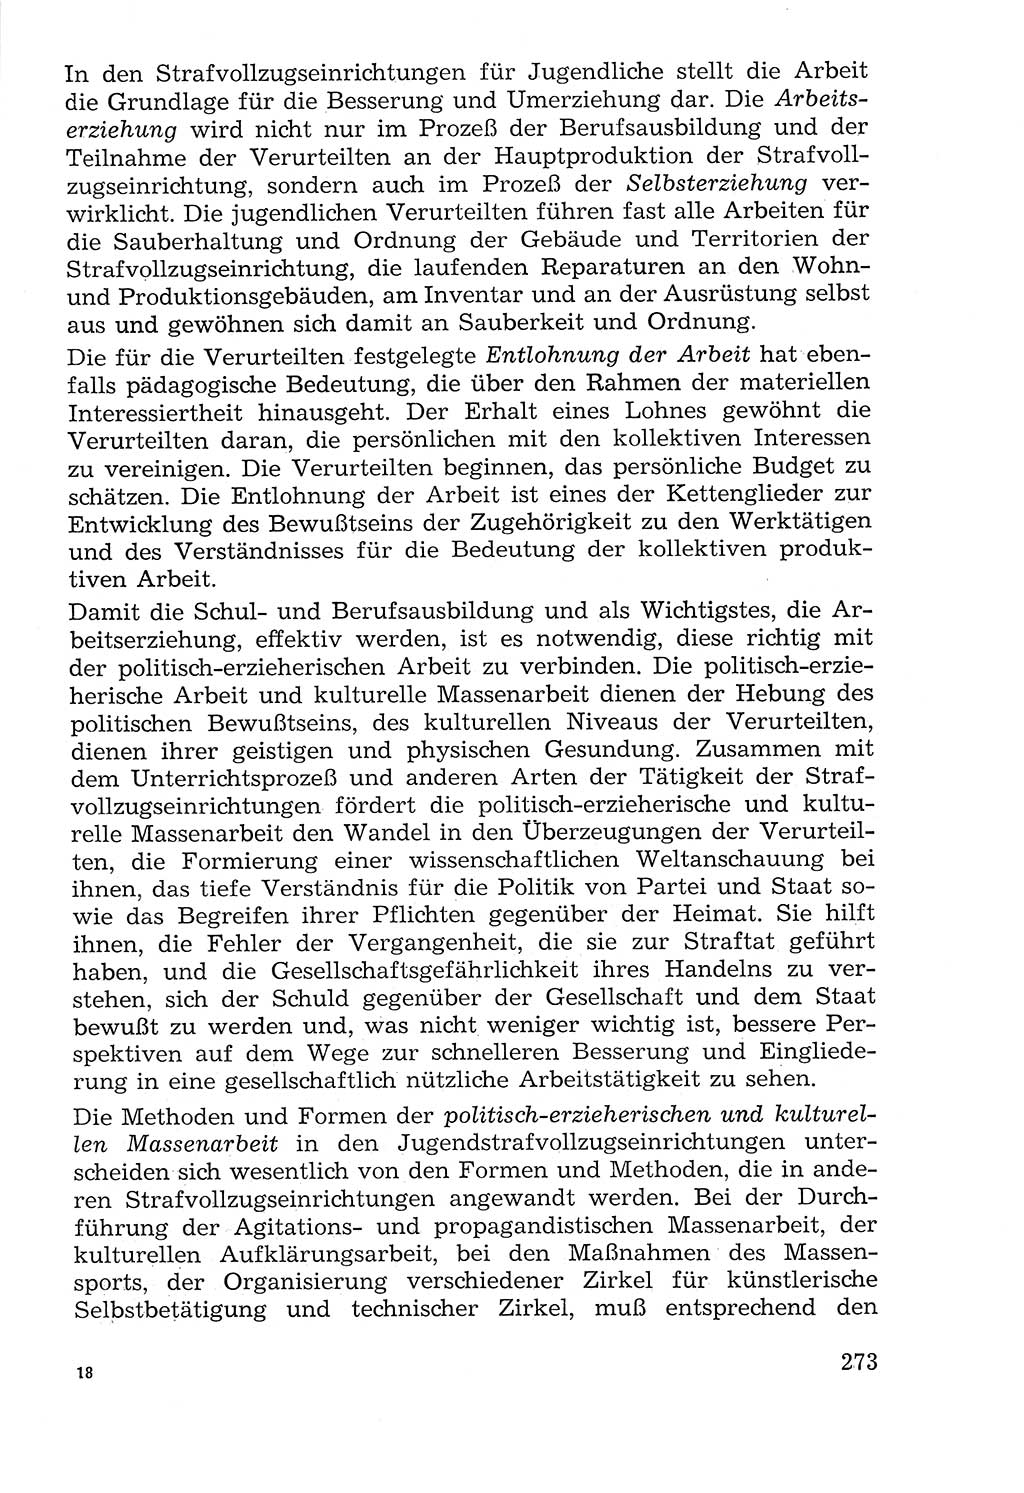 Lehrbuch der Strafvollzugspädagogik [Deutsche Demokratische Republik (DDR)] 1969, Seite 273 (Lb. SV-Pd. DDR 1969, S. 273)